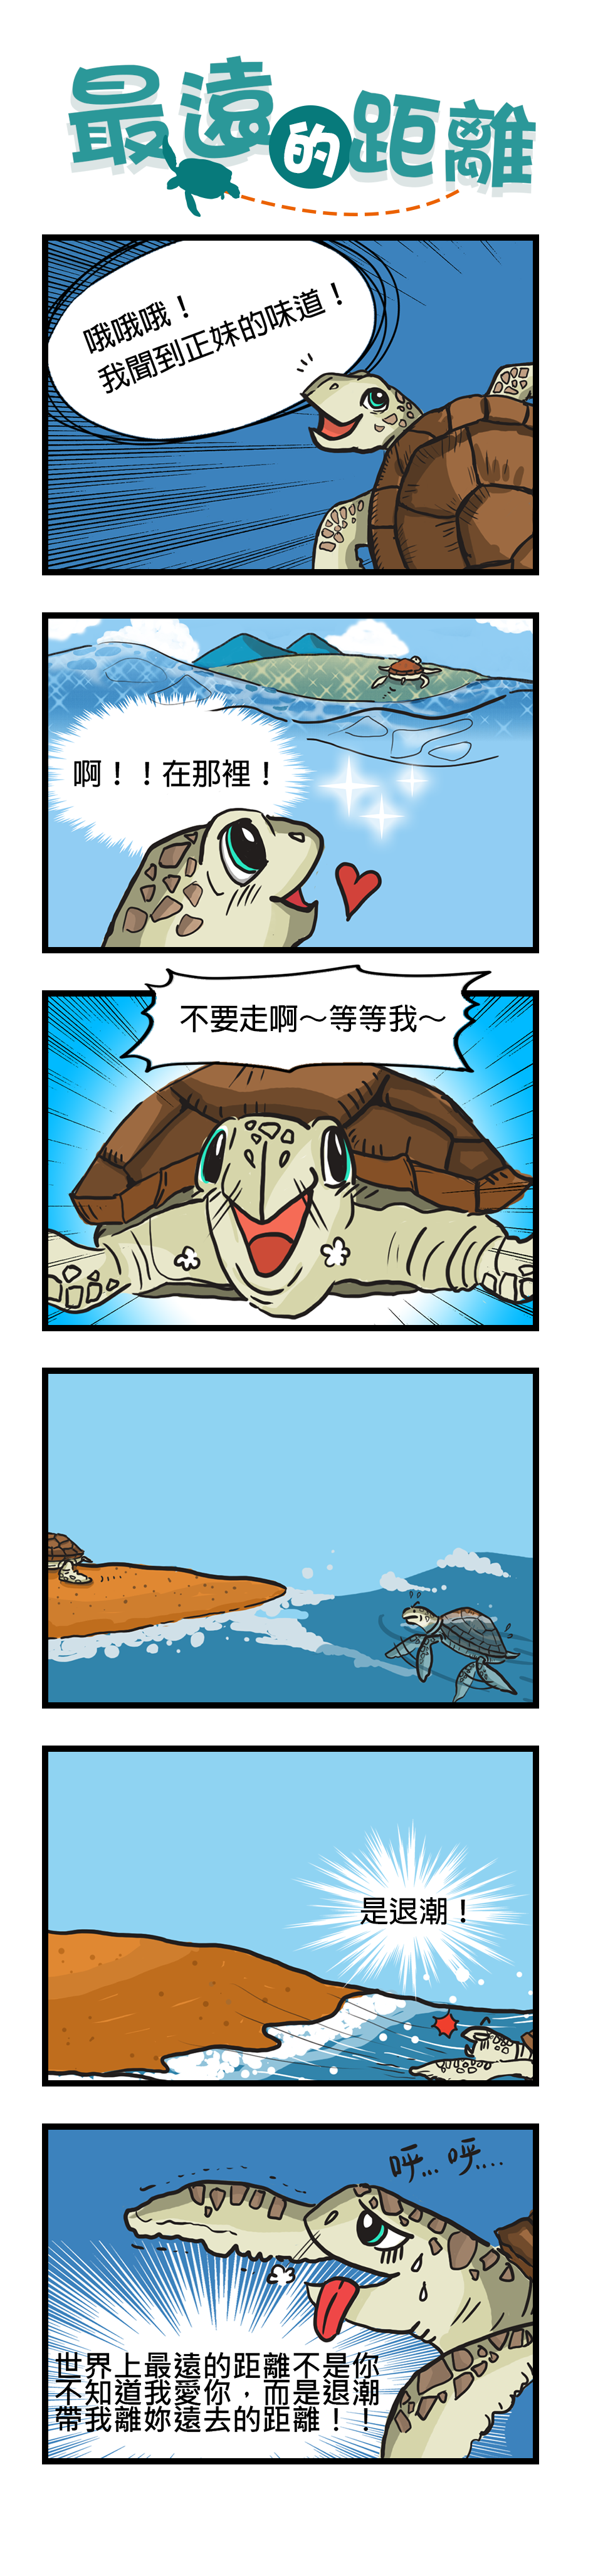 六格漫畫：最遠的距離。小海龜興奮地尋找附近的正妹海龜，雖然他想要上前，卻被退潮給推回海裡，怎麼也無法靠近正妹海龜。